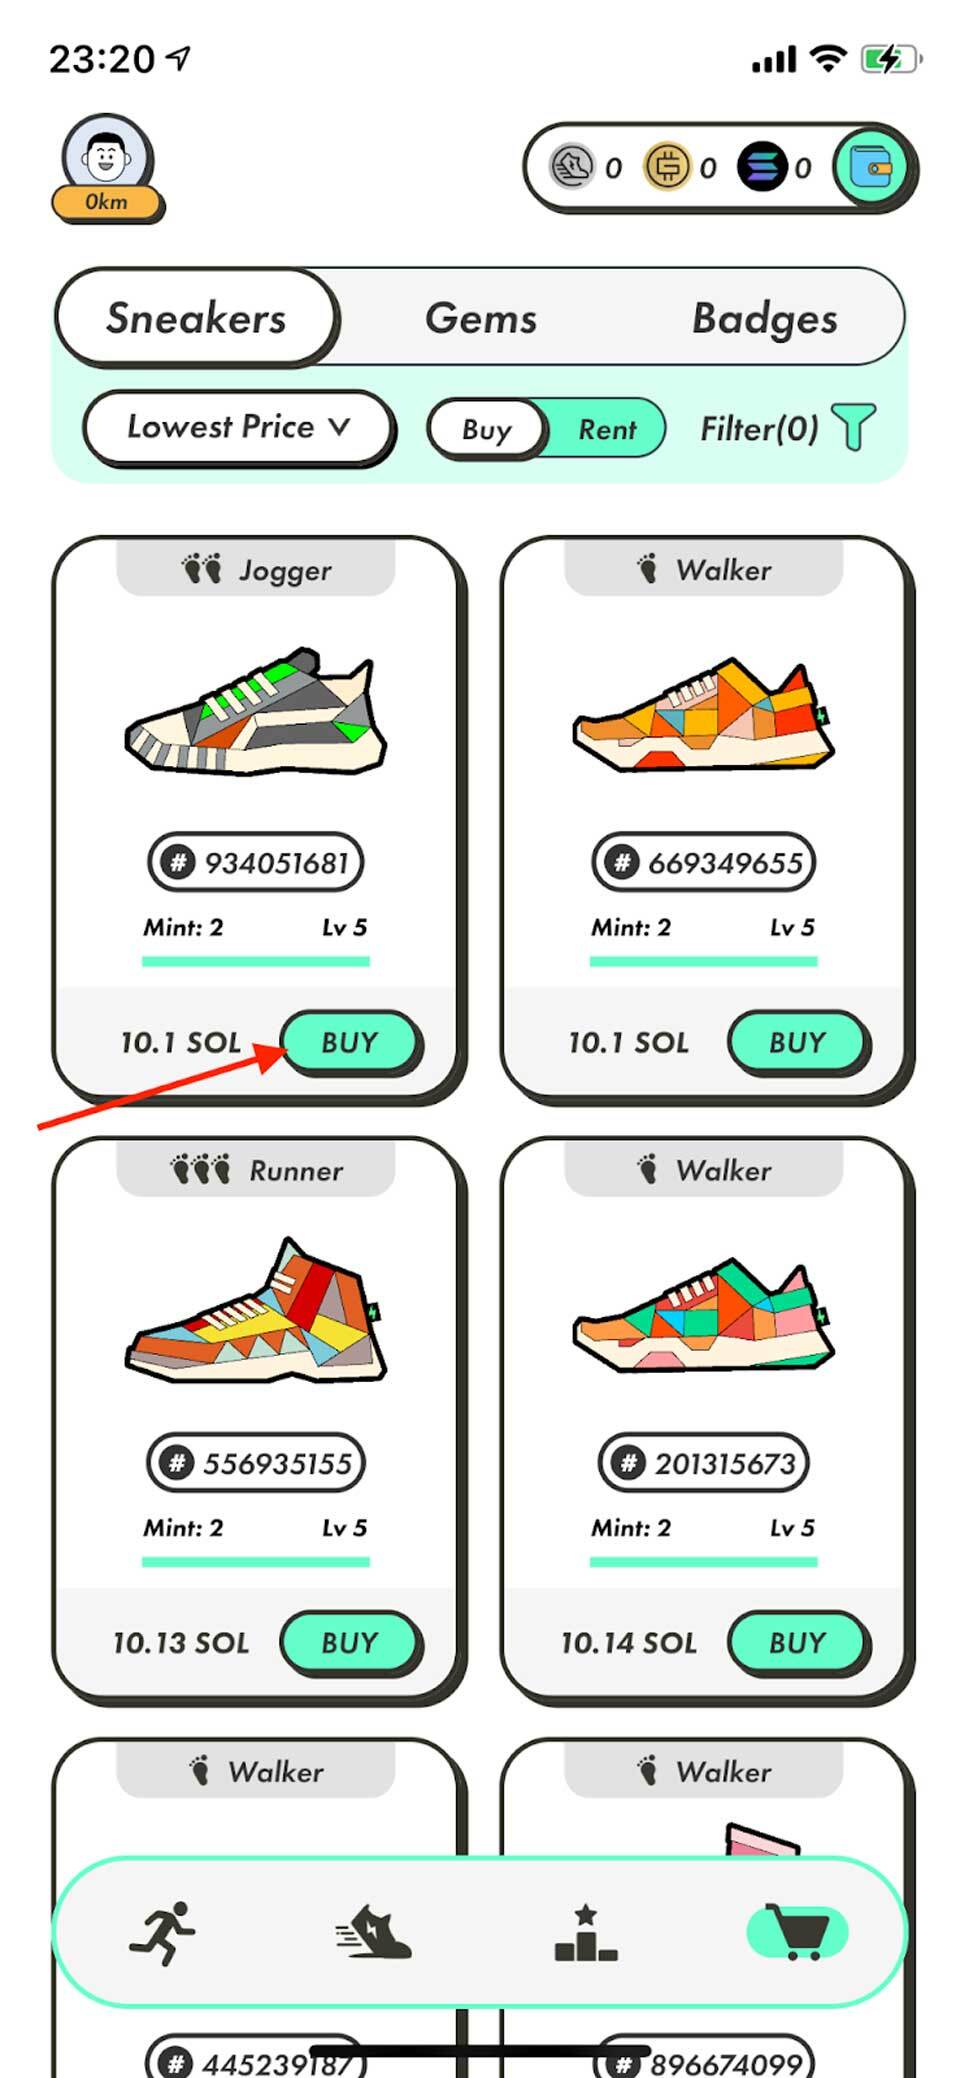 Chọn Sneaker mà bạn muốn mua, sau đó chọn “Buy”